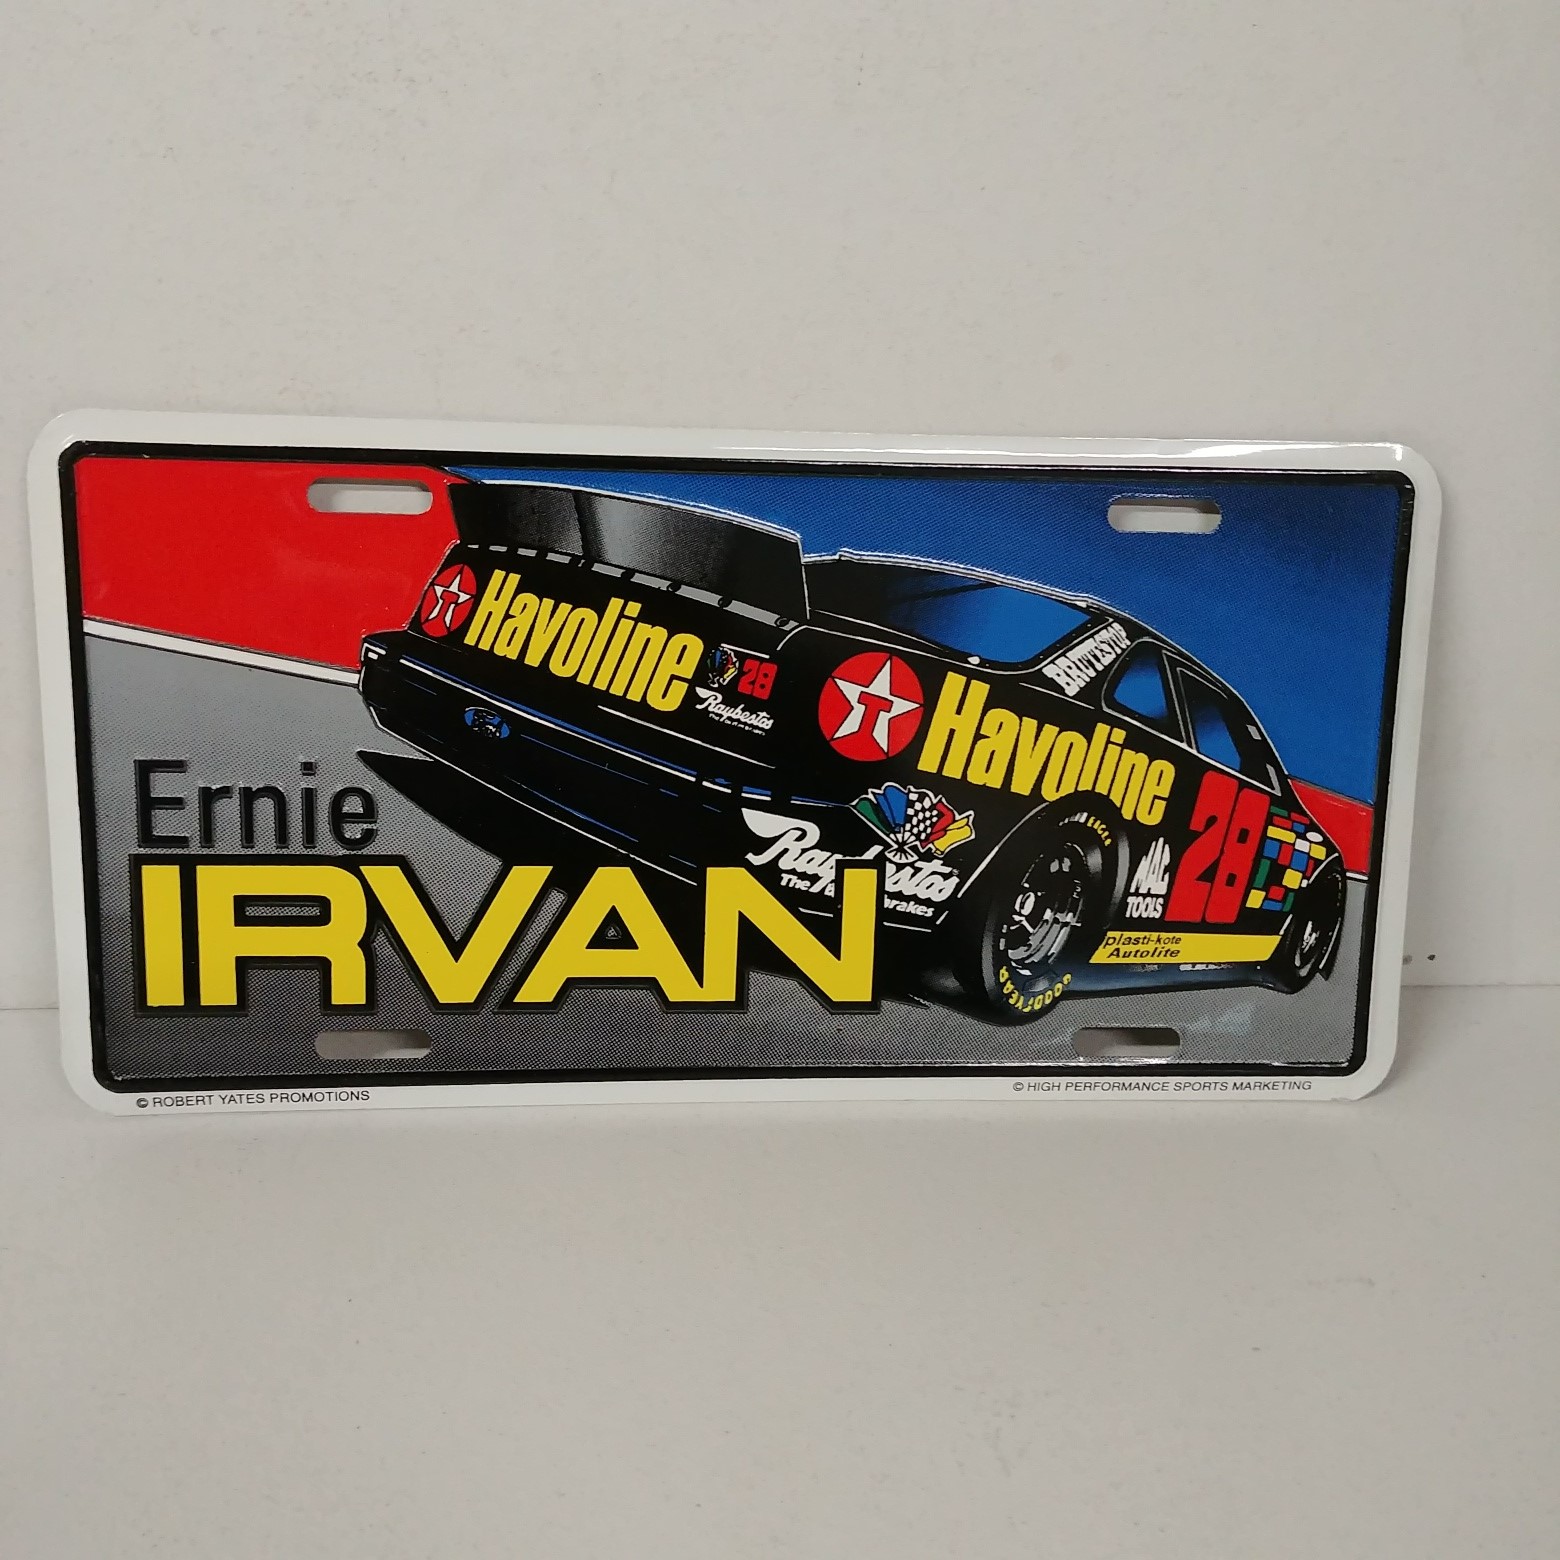 1995 Ernie Irvan Havoline metal license plate